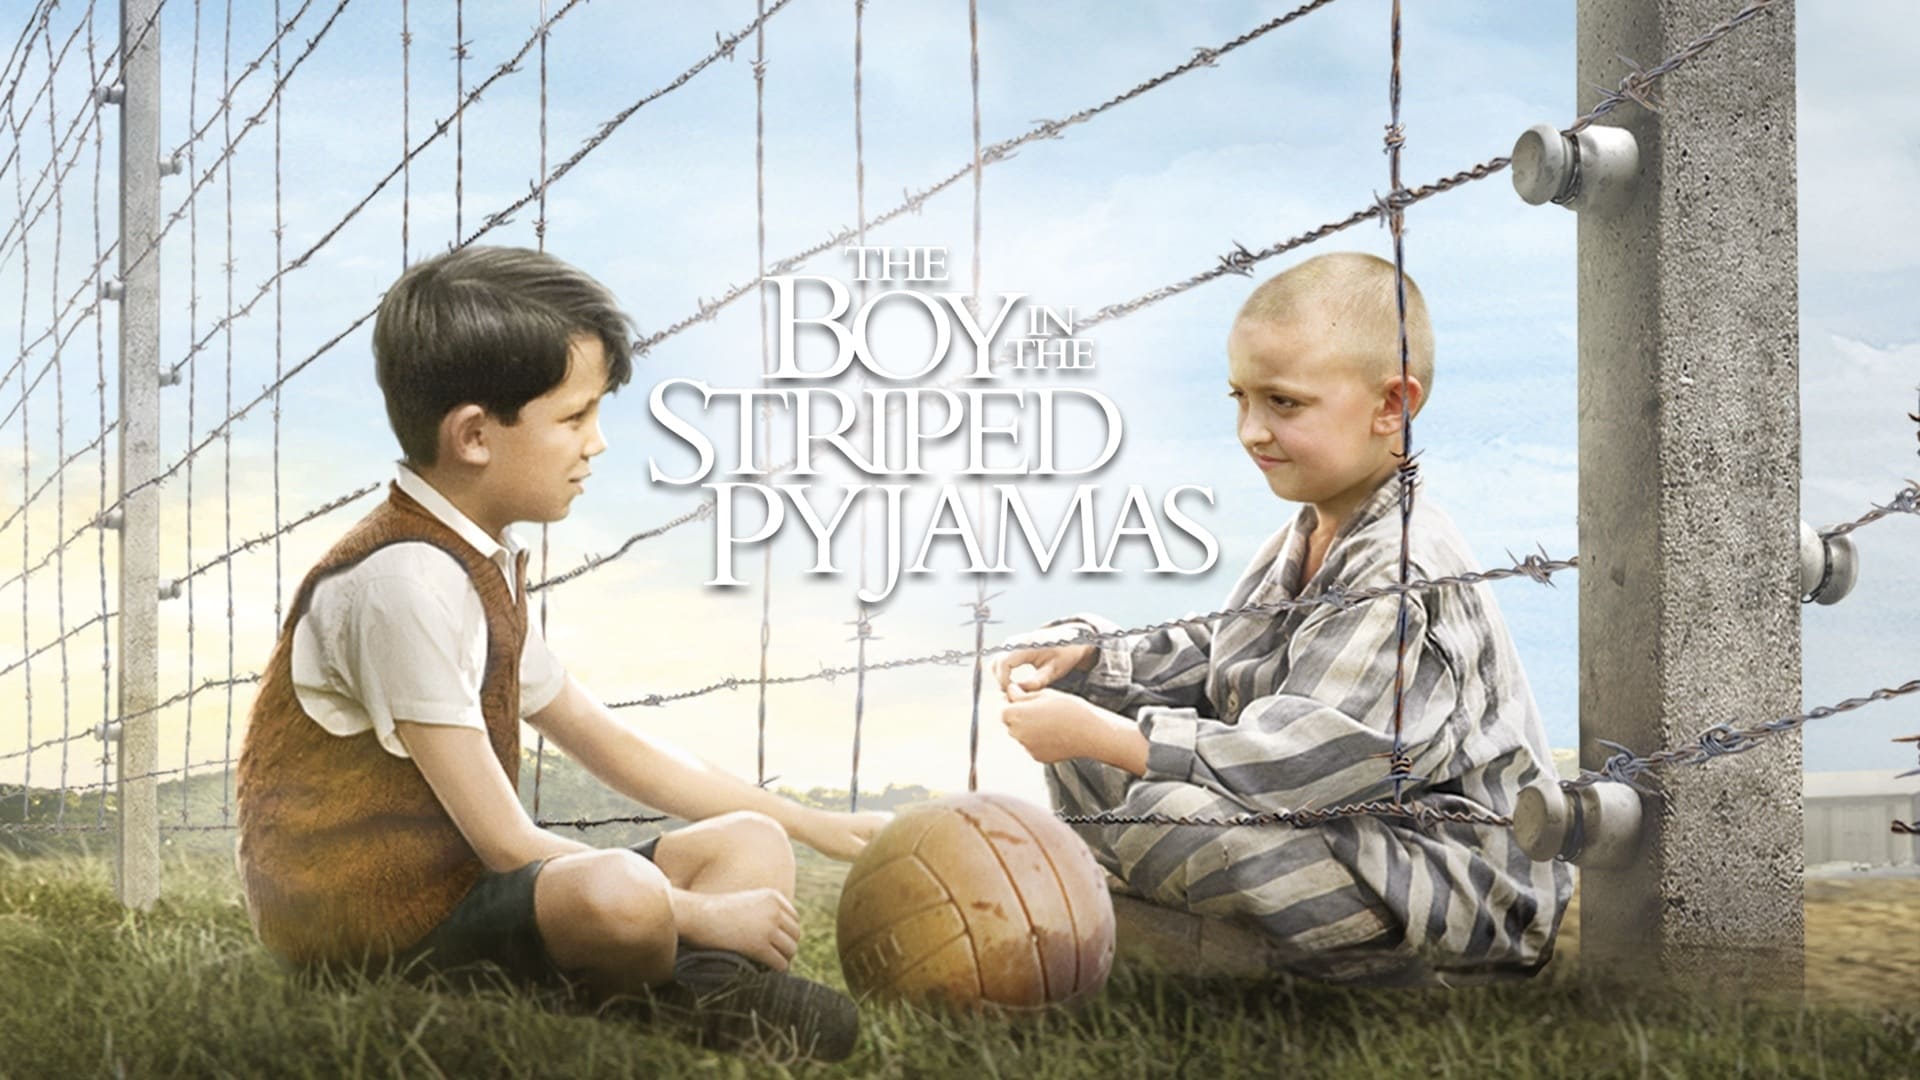 Chlapec v pruhovanom pyžame (2008)